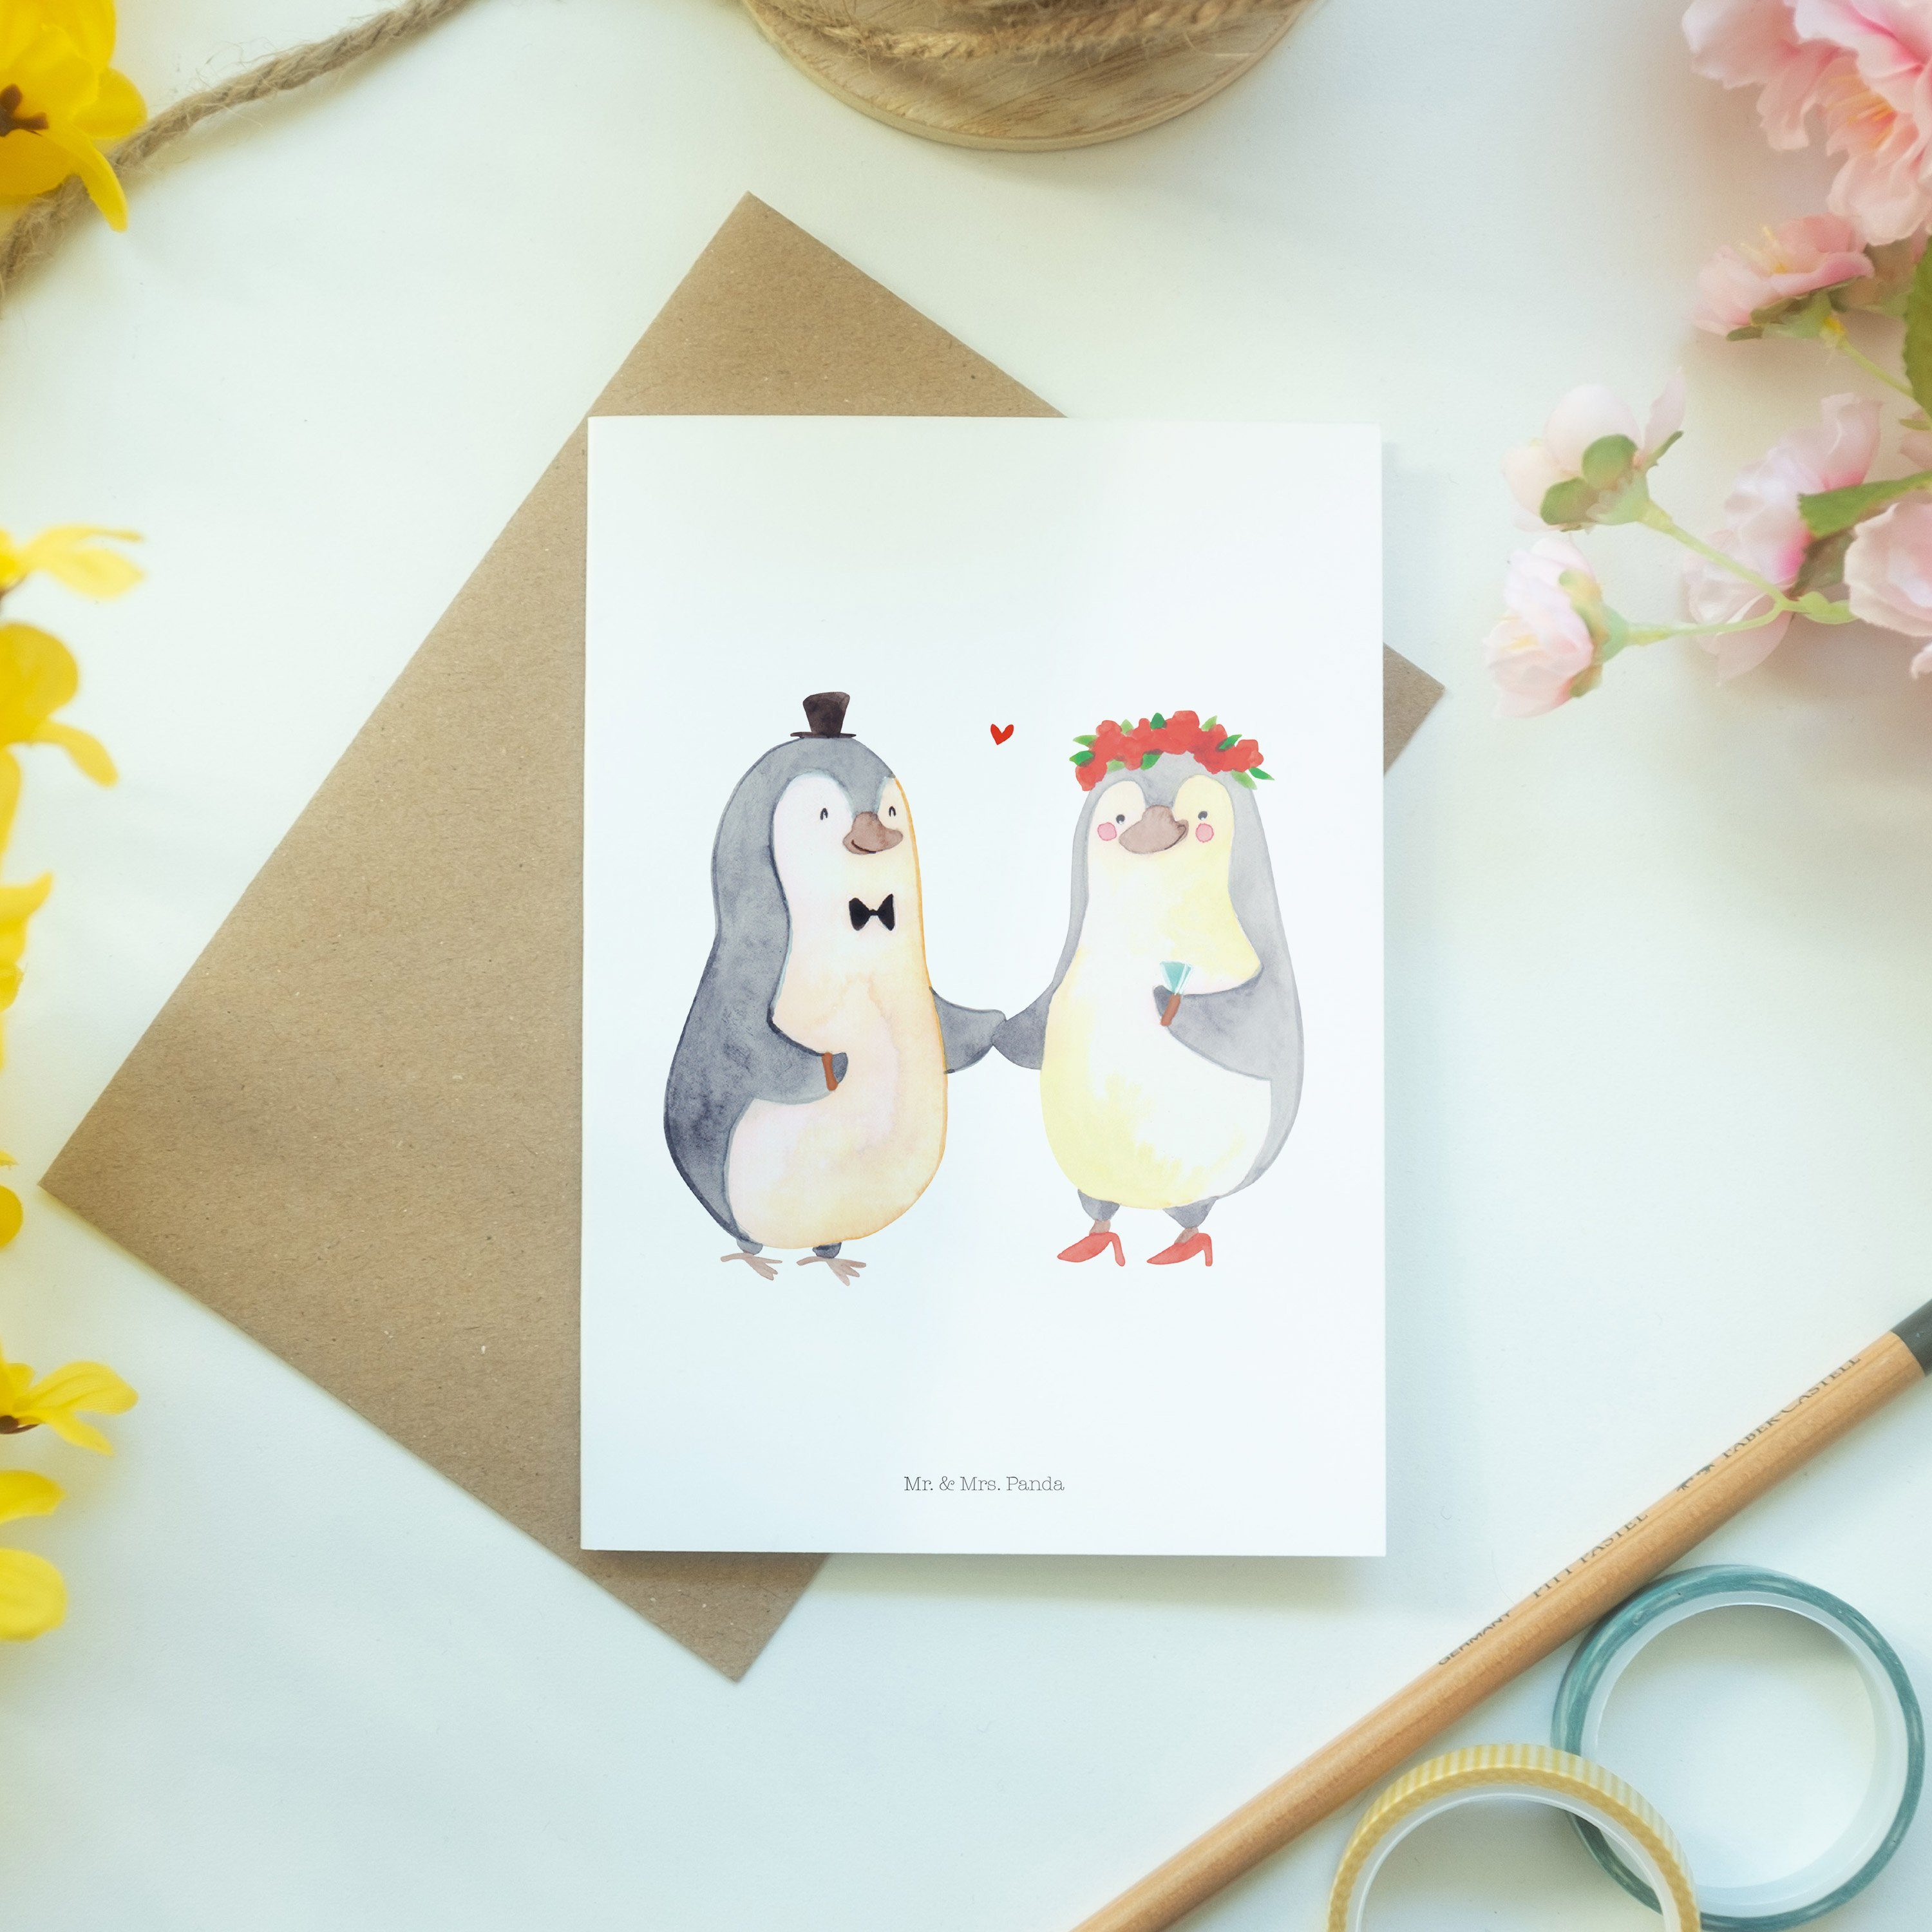 Mr. & Mrs. Panda Gl Heirat Weiß - Pinguin - Grußkarte Hochzeitskarte, Einladungskarte, Geschenk